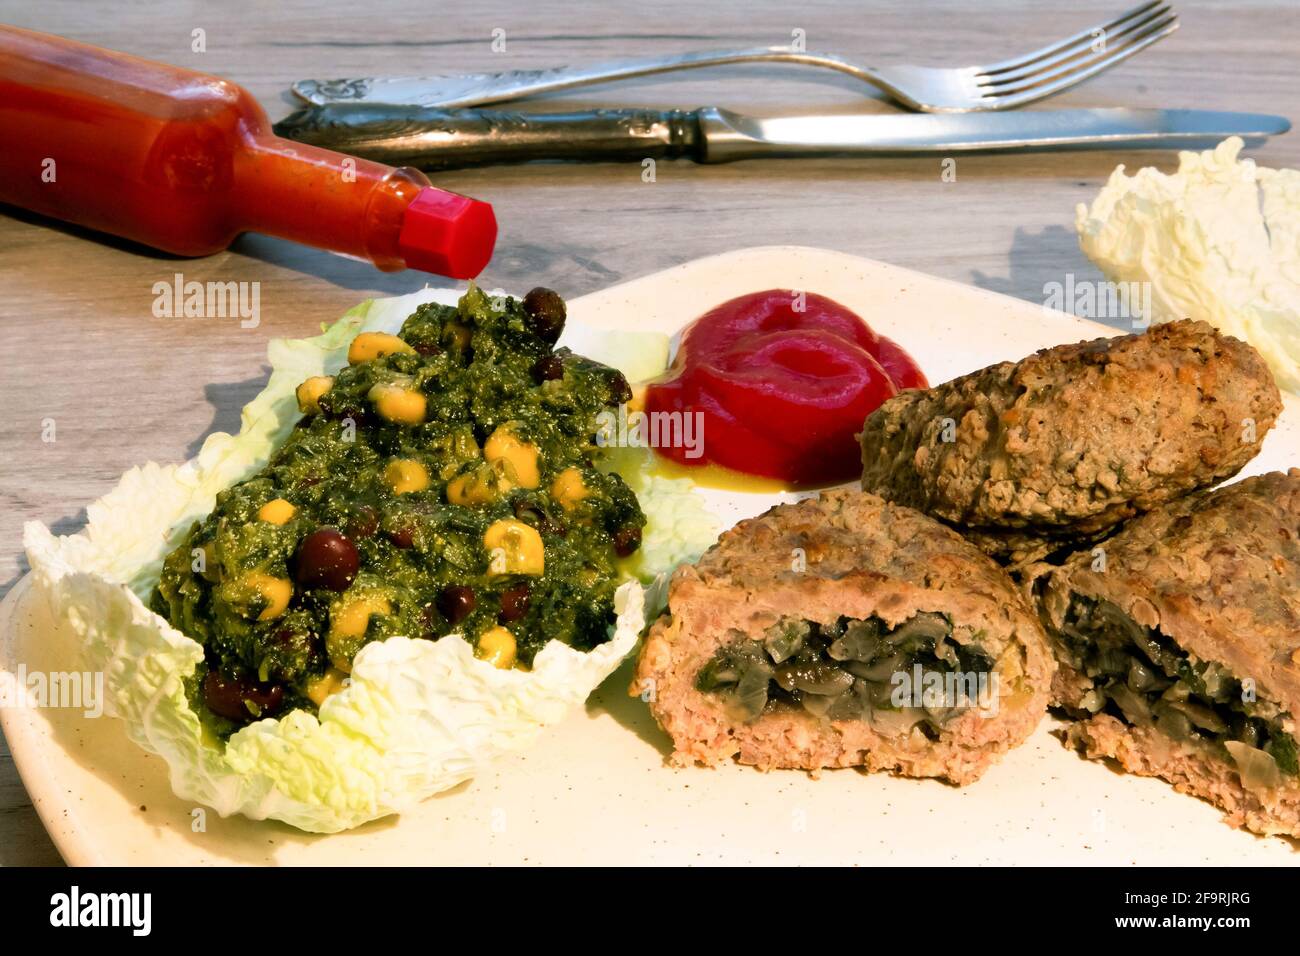 Côtelettes de bœuf avec garniture aux champignons, salade de légumes et ketchup servies sur une assiette légère avec une petite bouteille de sauce épicée couchée à côté Banque D'Images